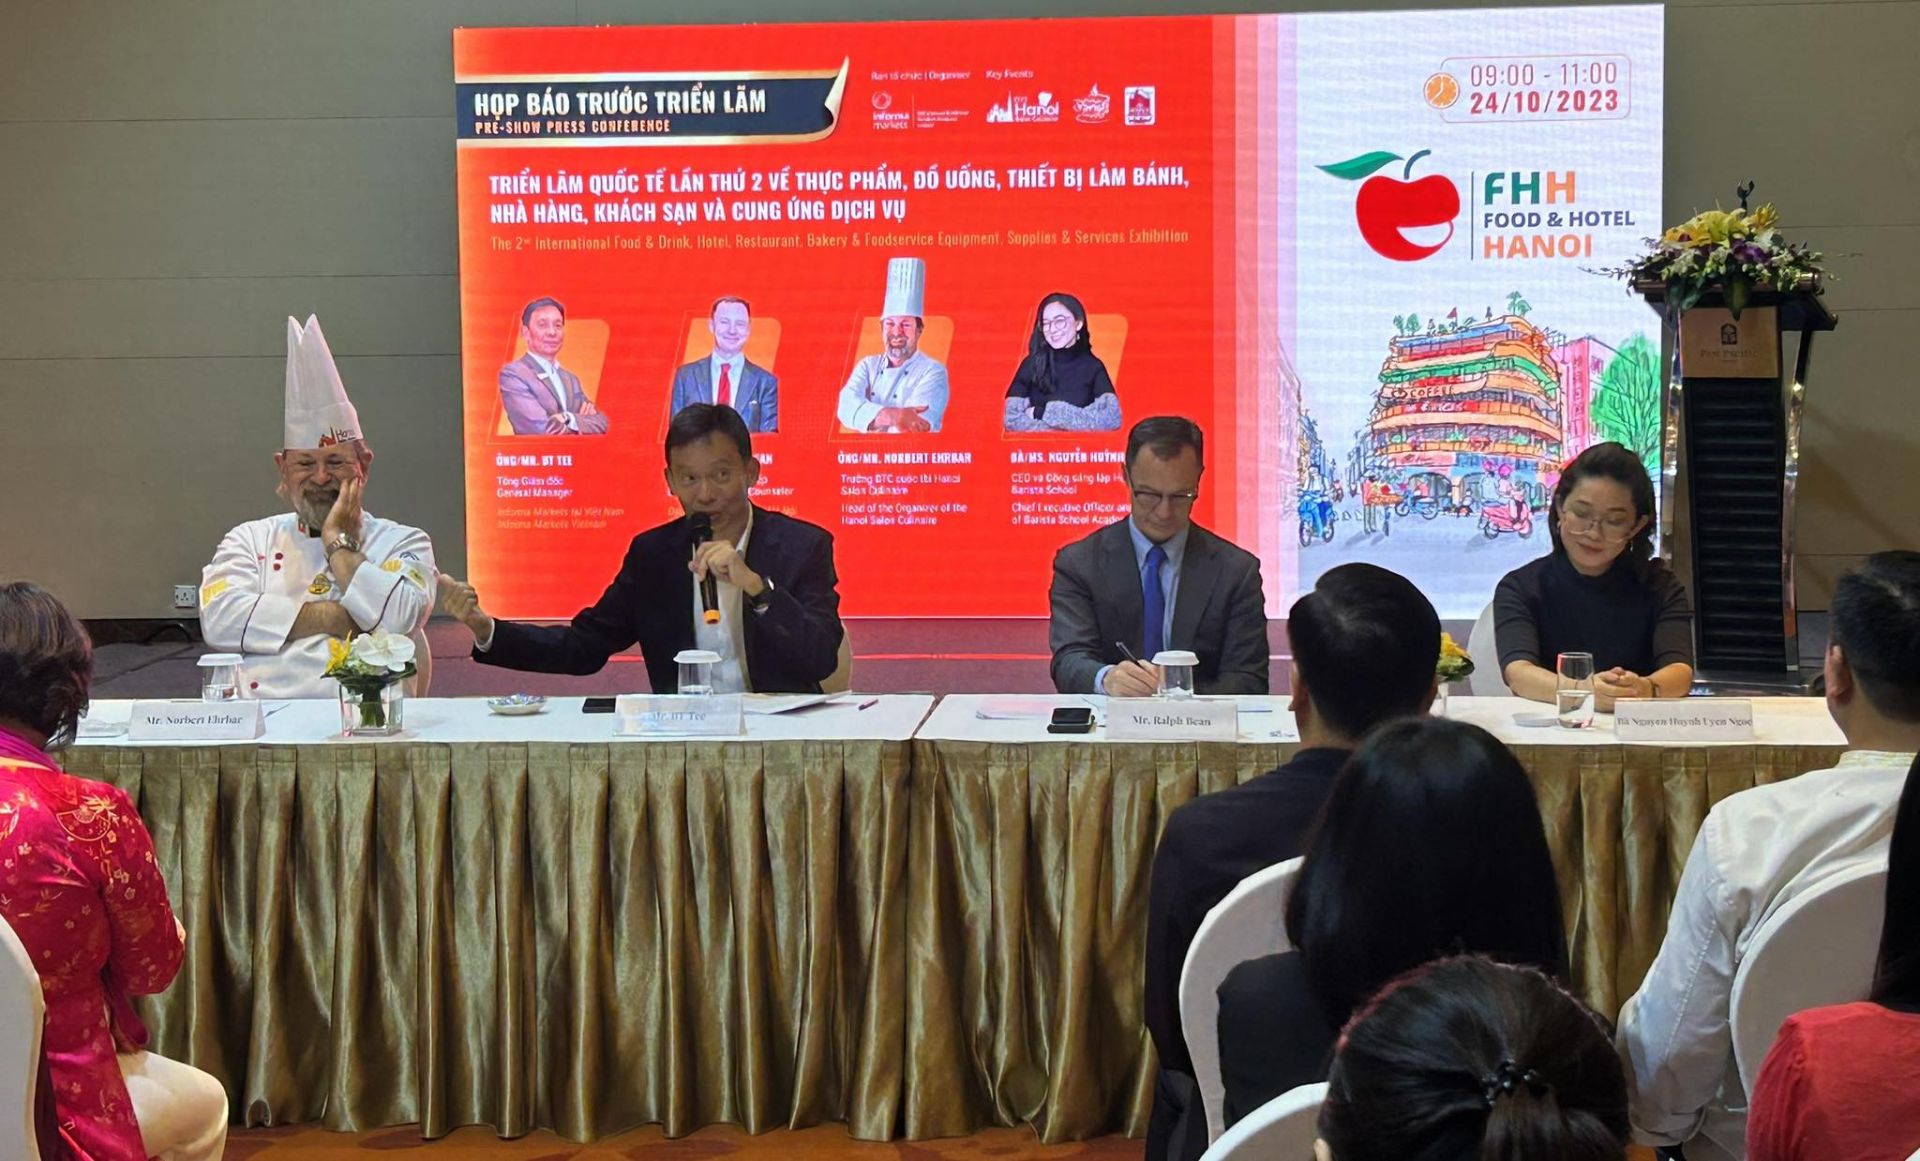 Họp báo trước Triển lãm quốc tế lần thứ hai về thực phẩm, đồ uống, thiết bị làm bánh, nhà hàng, khách sạn và cung ứng dịch vụ tại Việt Nam - Food & Hotel Hanoi 2023